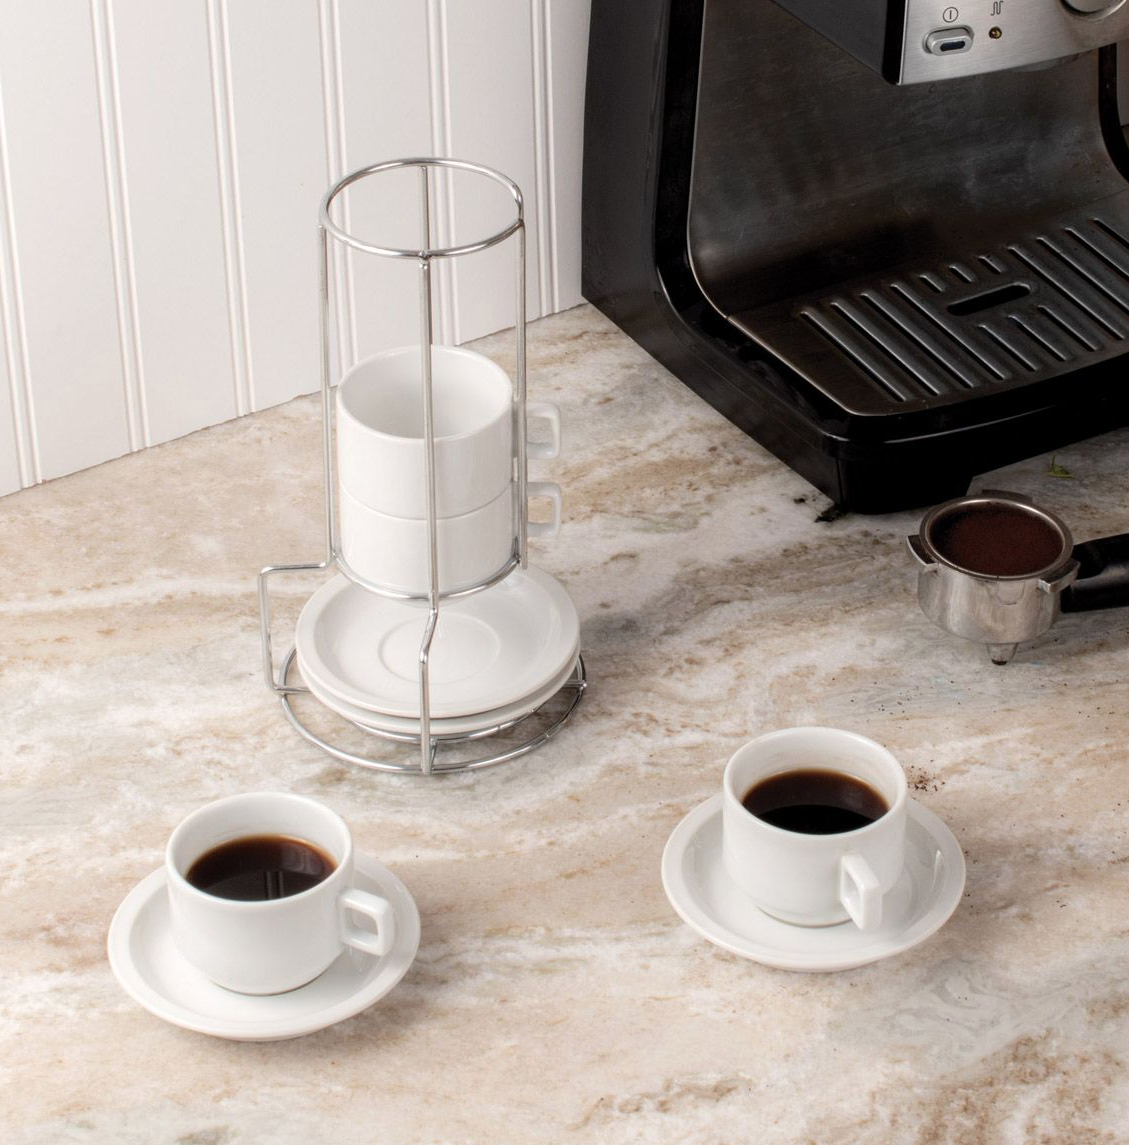 Stackable espresso cup